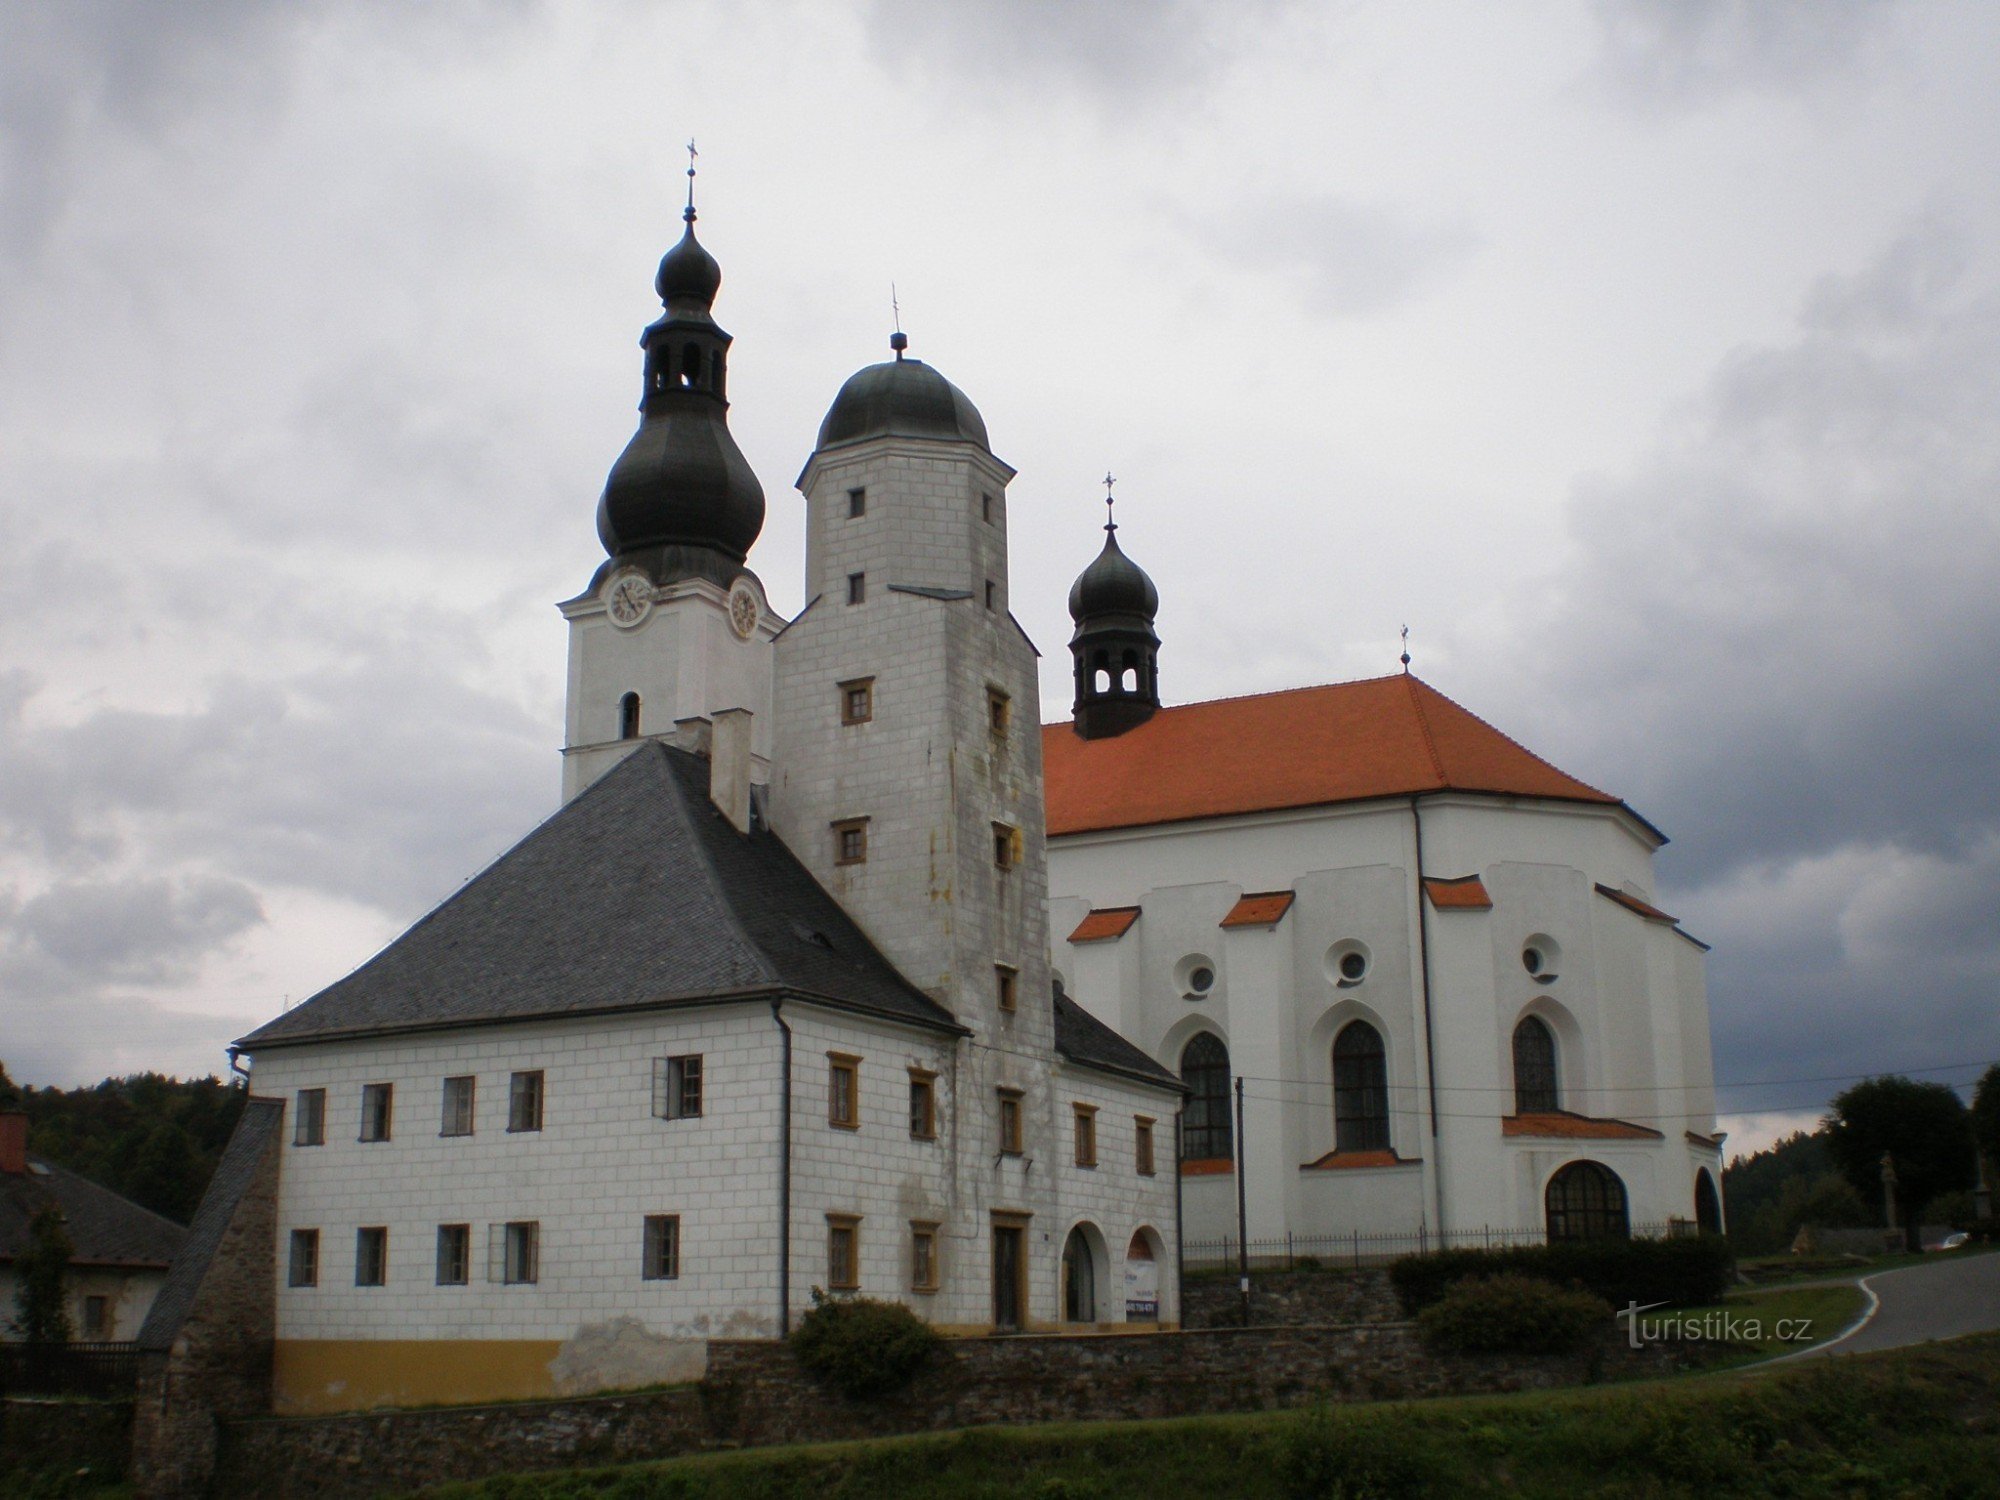 Branná - castello e chiesa